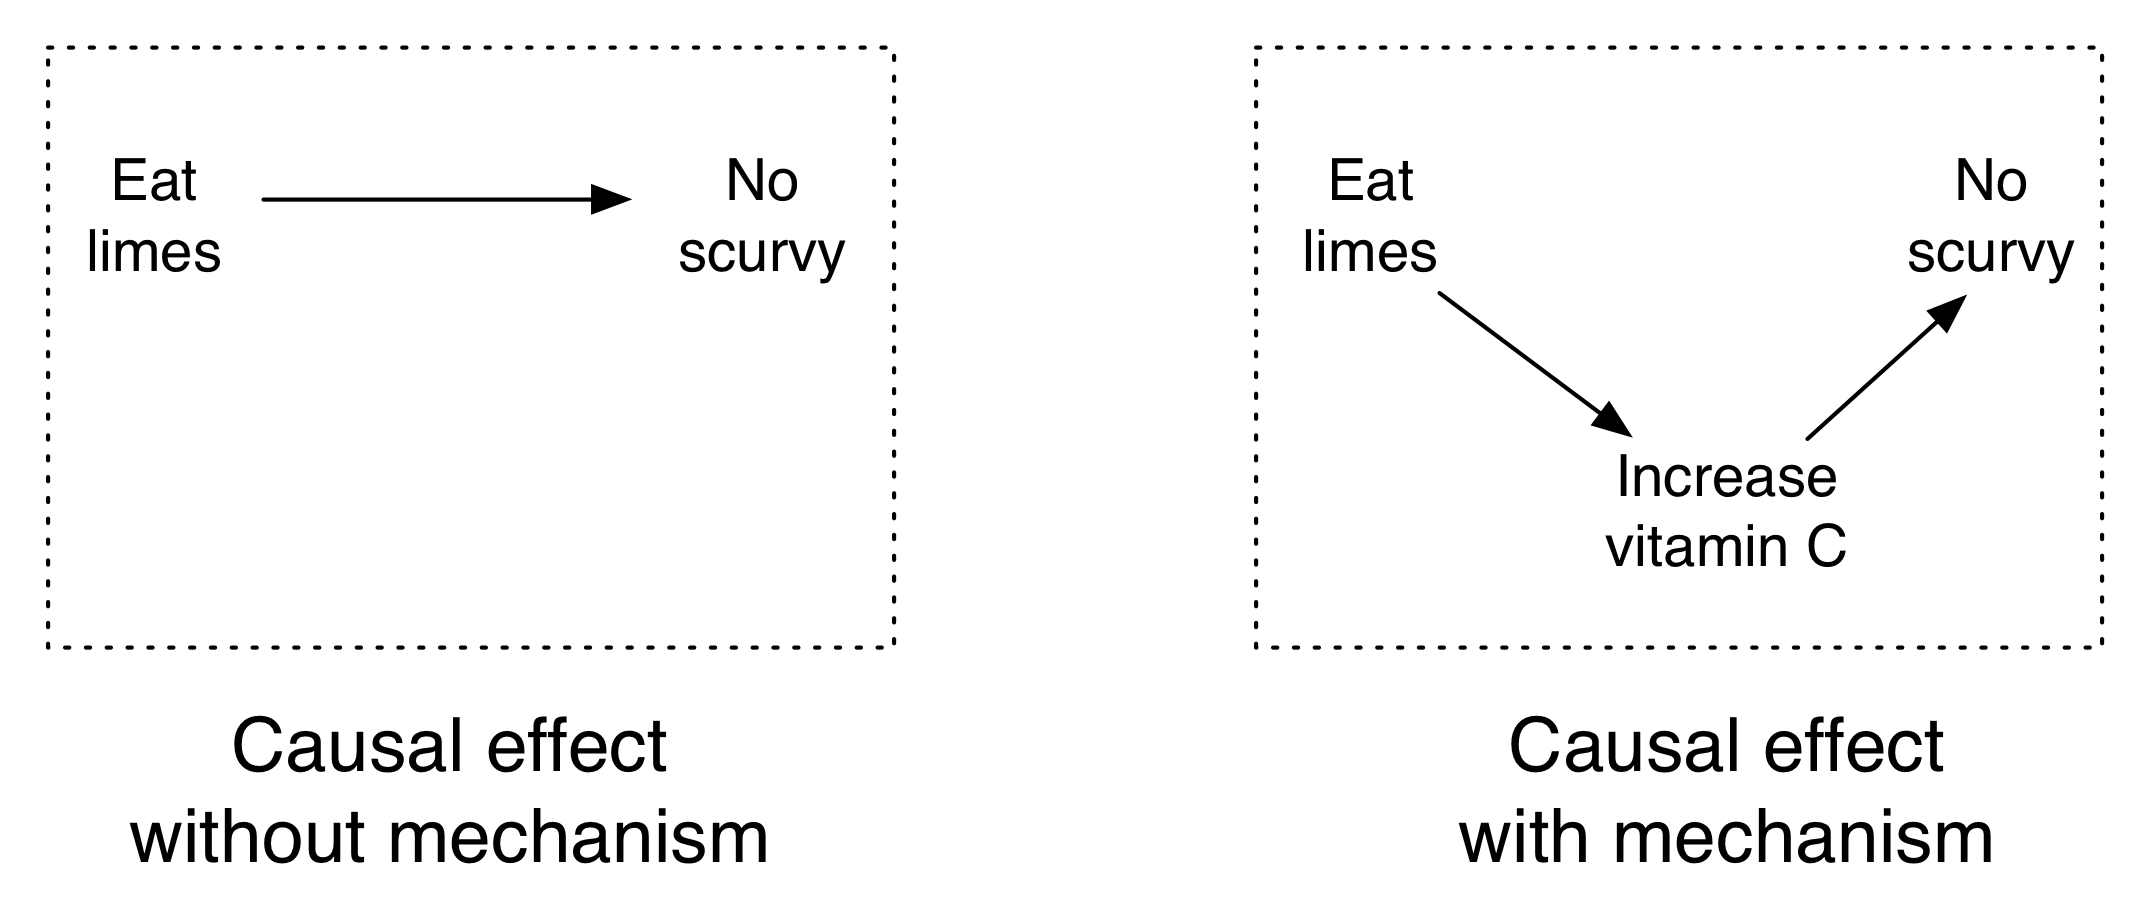 Figure 4.10: Ang mga lihim ay pinipigilan ang scurvy at ang mekanismo ay bitamina C.